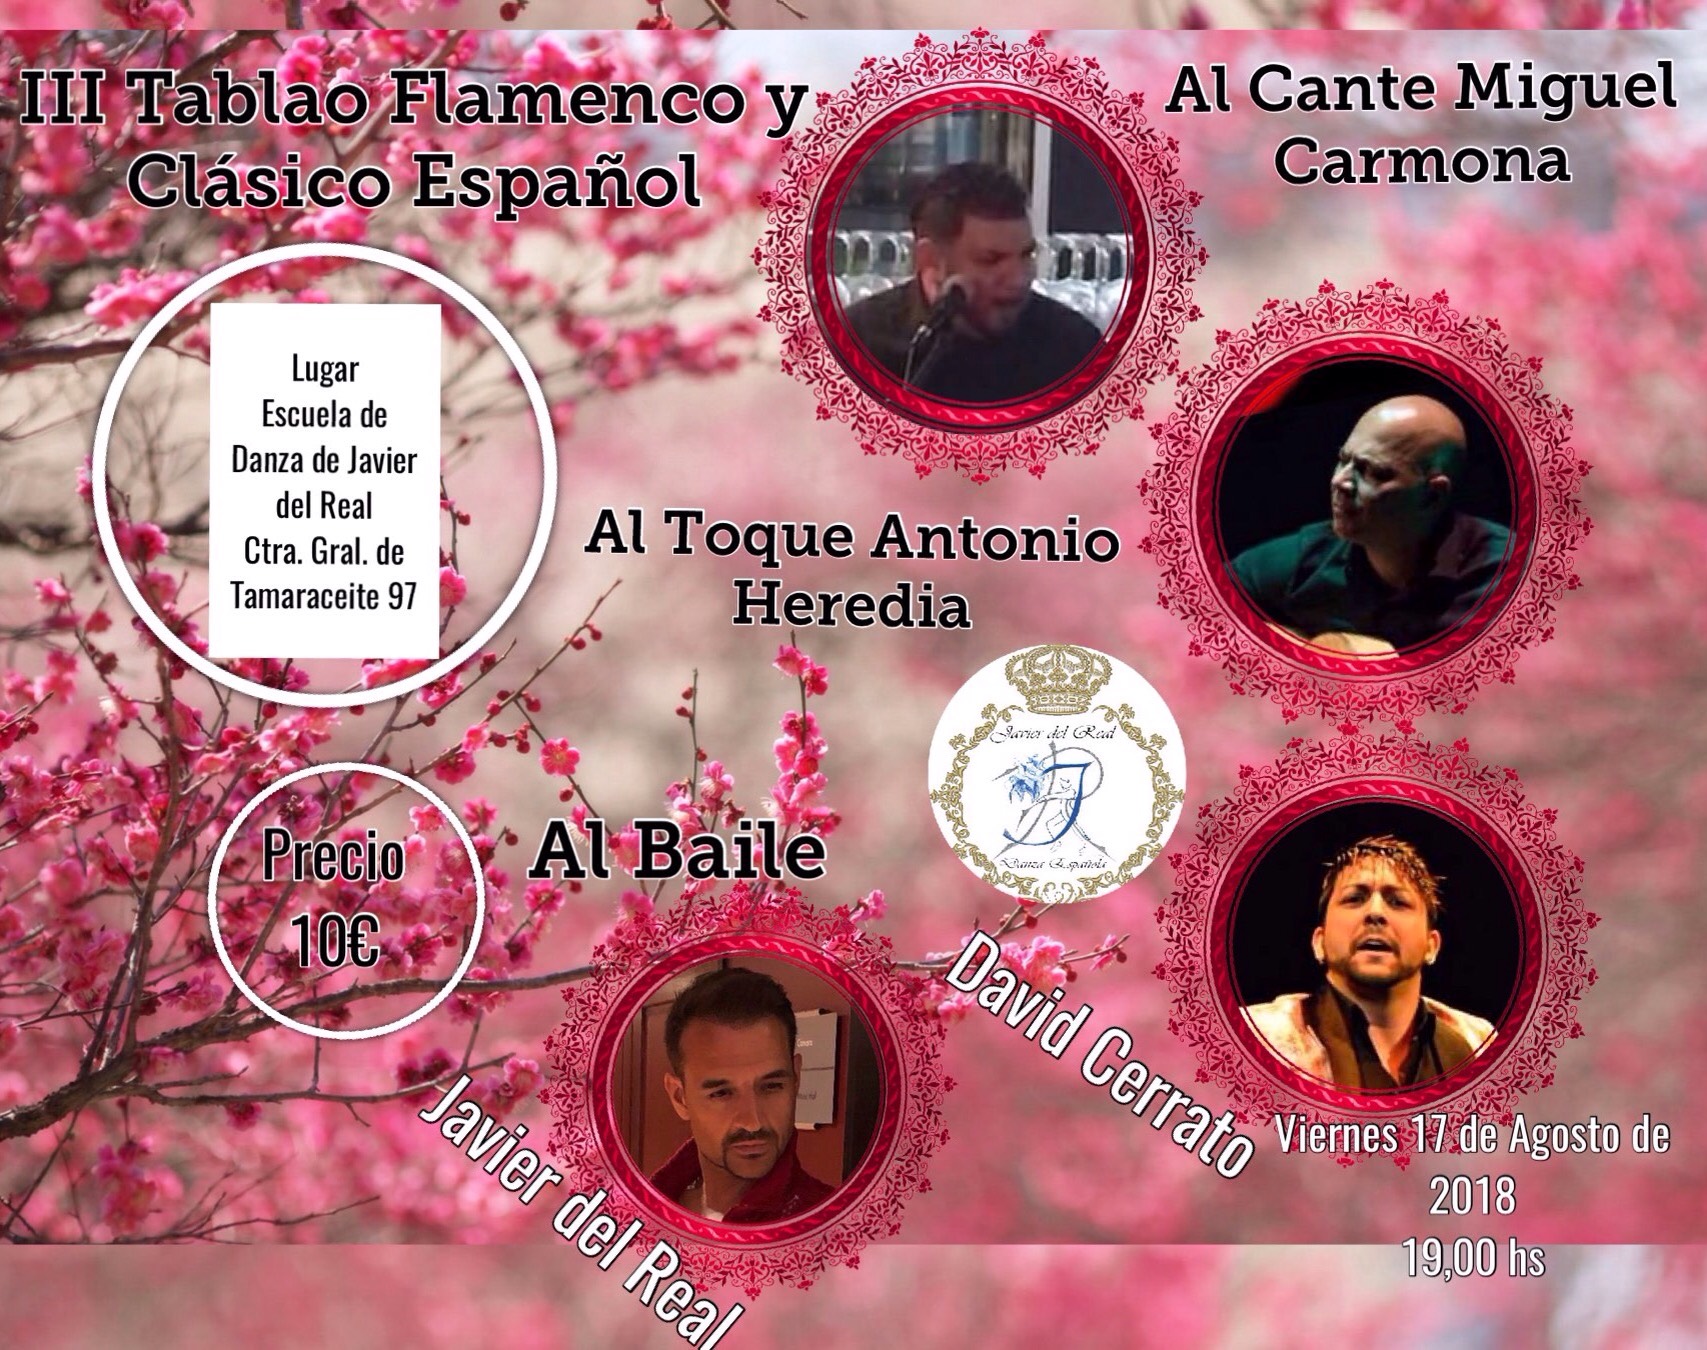 Curso de Danza y III Tablao Flamenco y Clásico Español